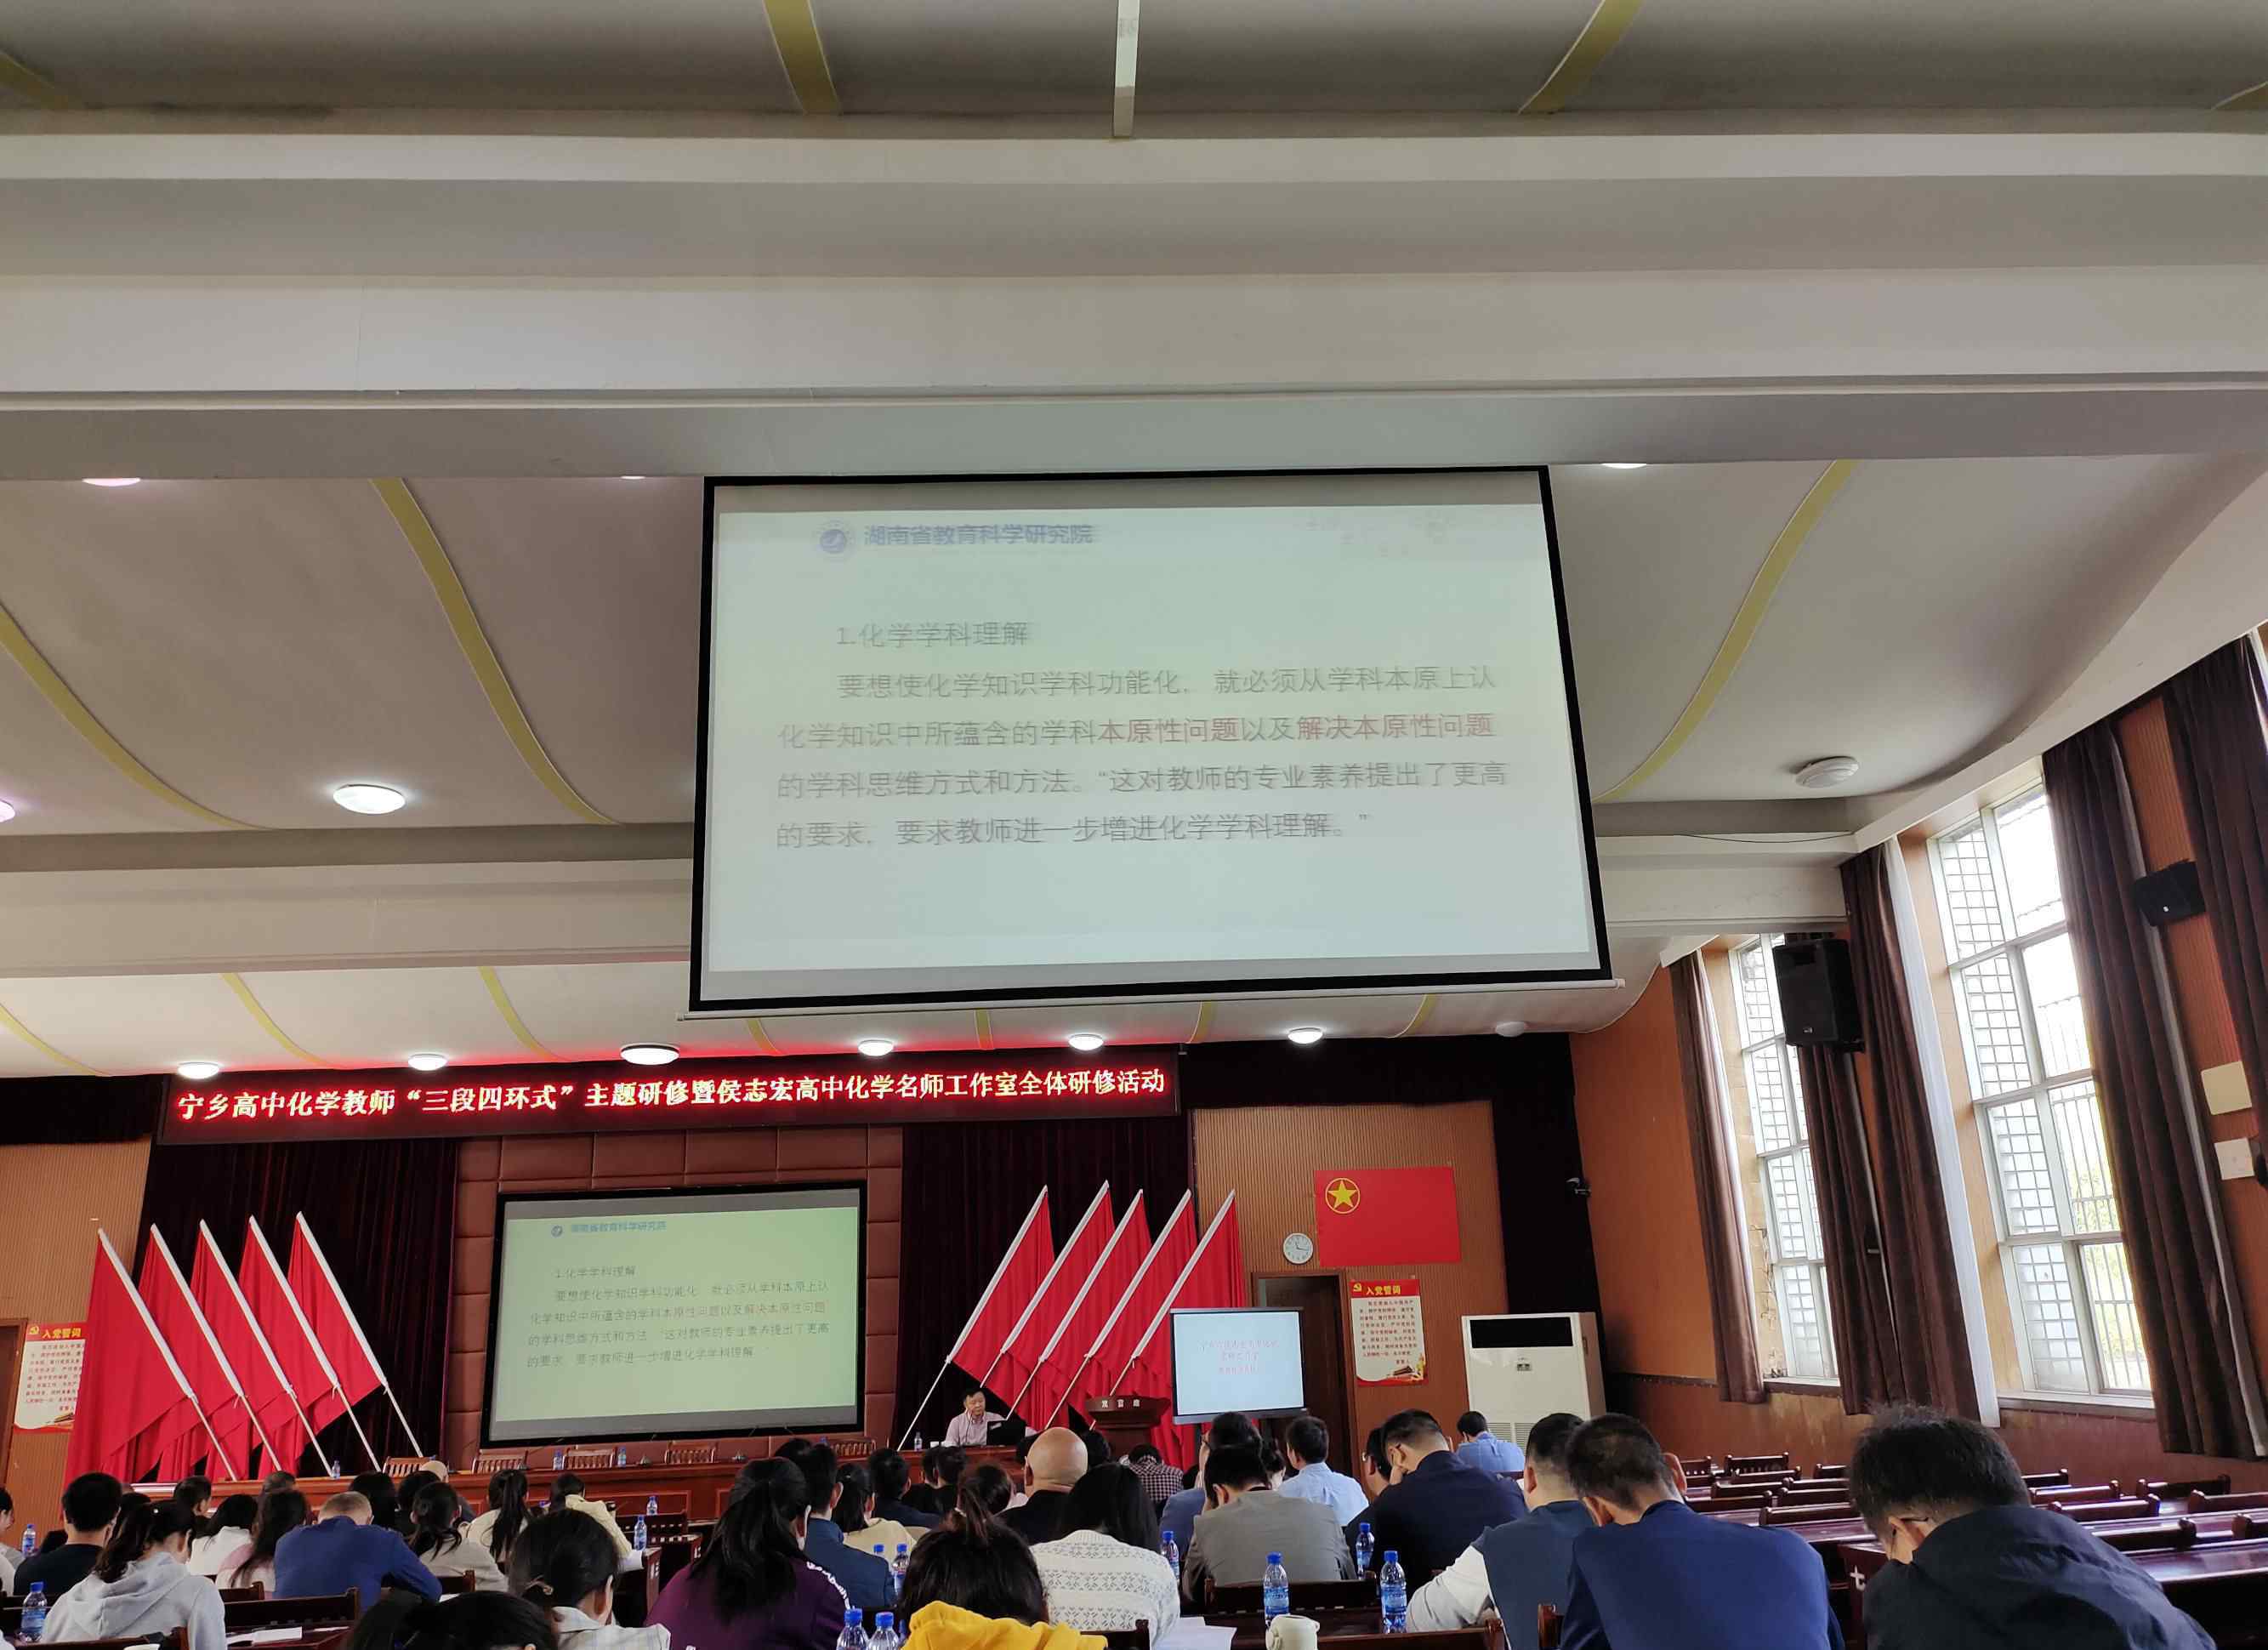 侯志宏 2020年侯志宏高中化学名师工作室第一次研修活动在宁乡一中顺利举行